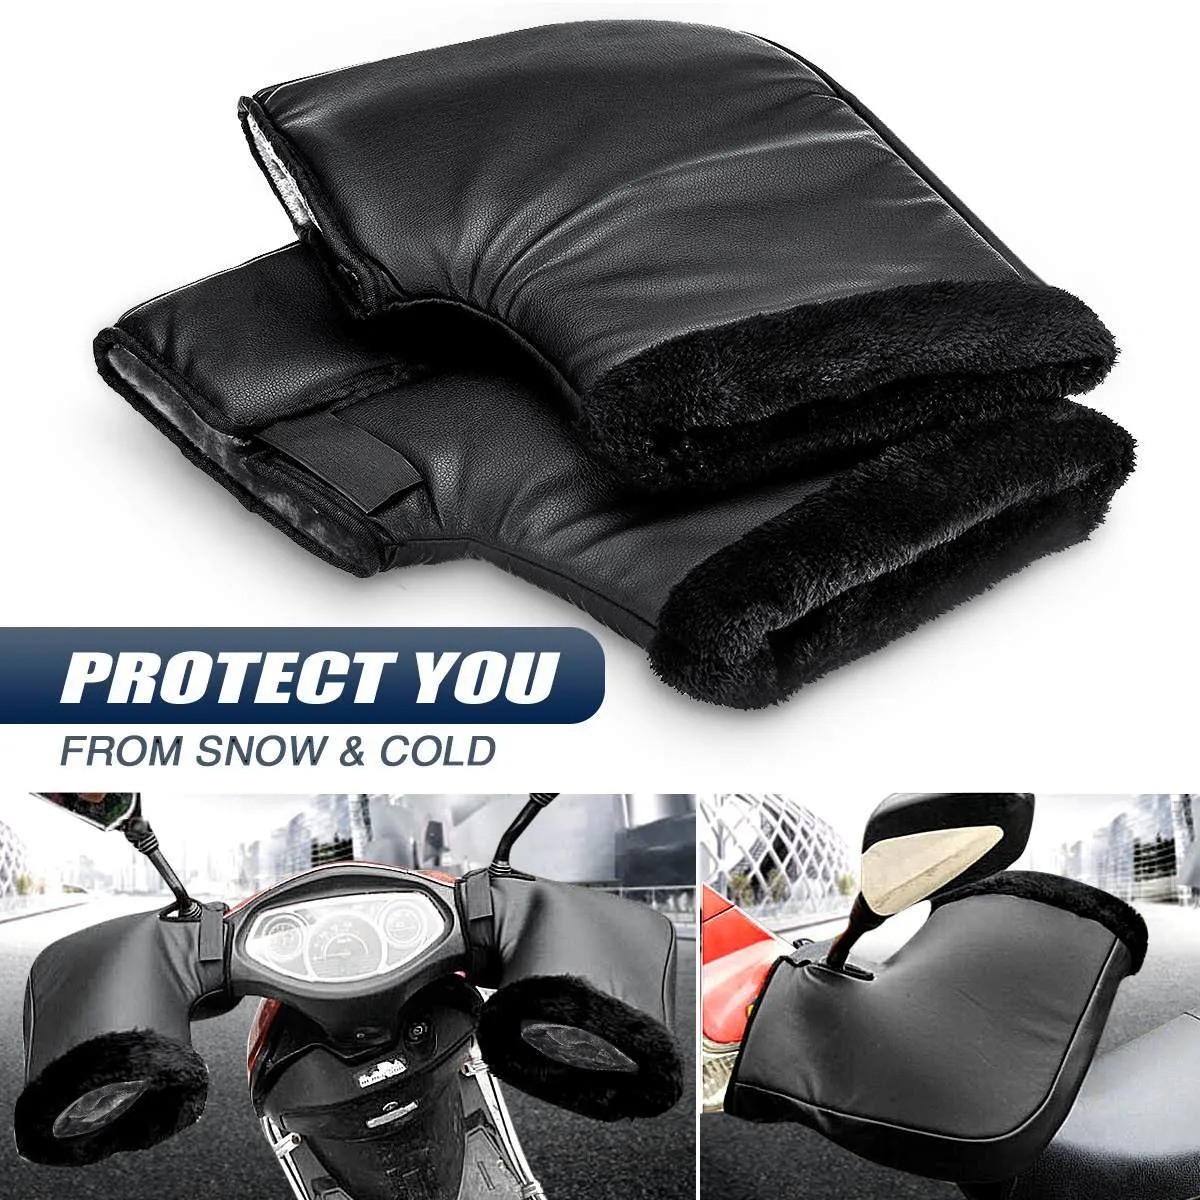 Guanti da moto antivento in PU invernali spessi e caldi per manubrio, guanti con copertura termica universali per moto, scooter